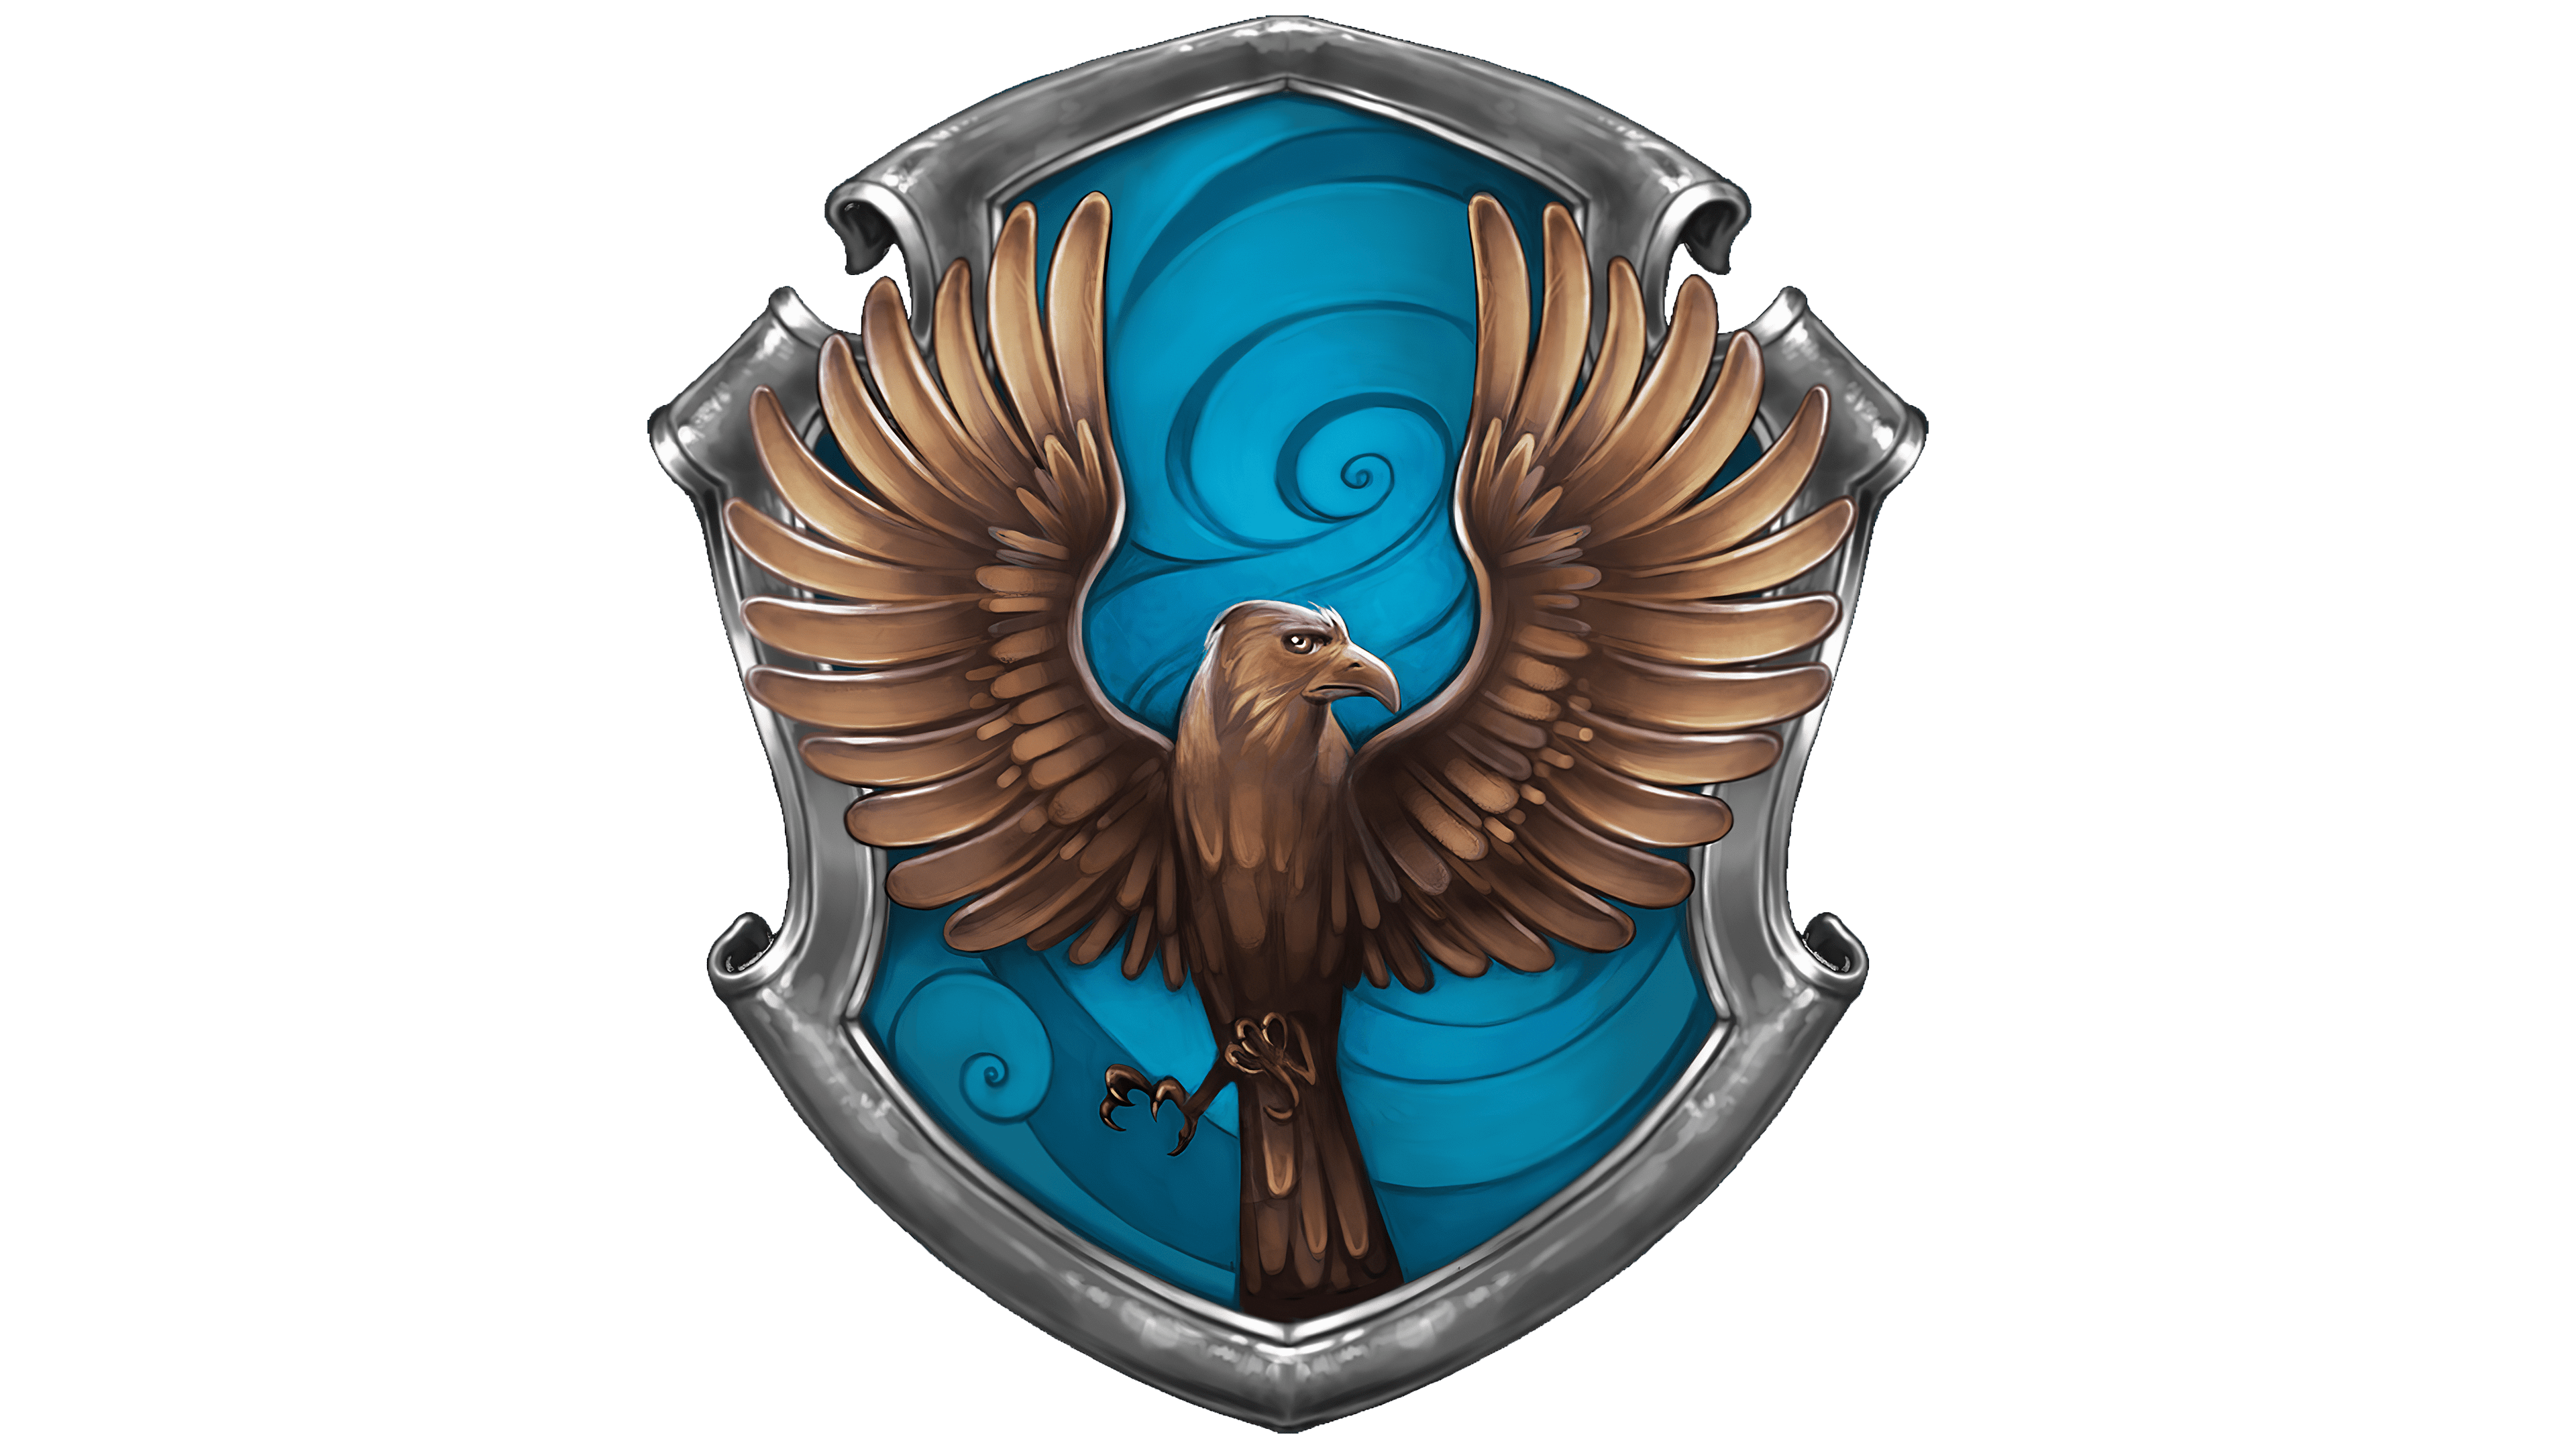 Ravenclaw House Crest Emblem Outline Svg, Harry Potter House